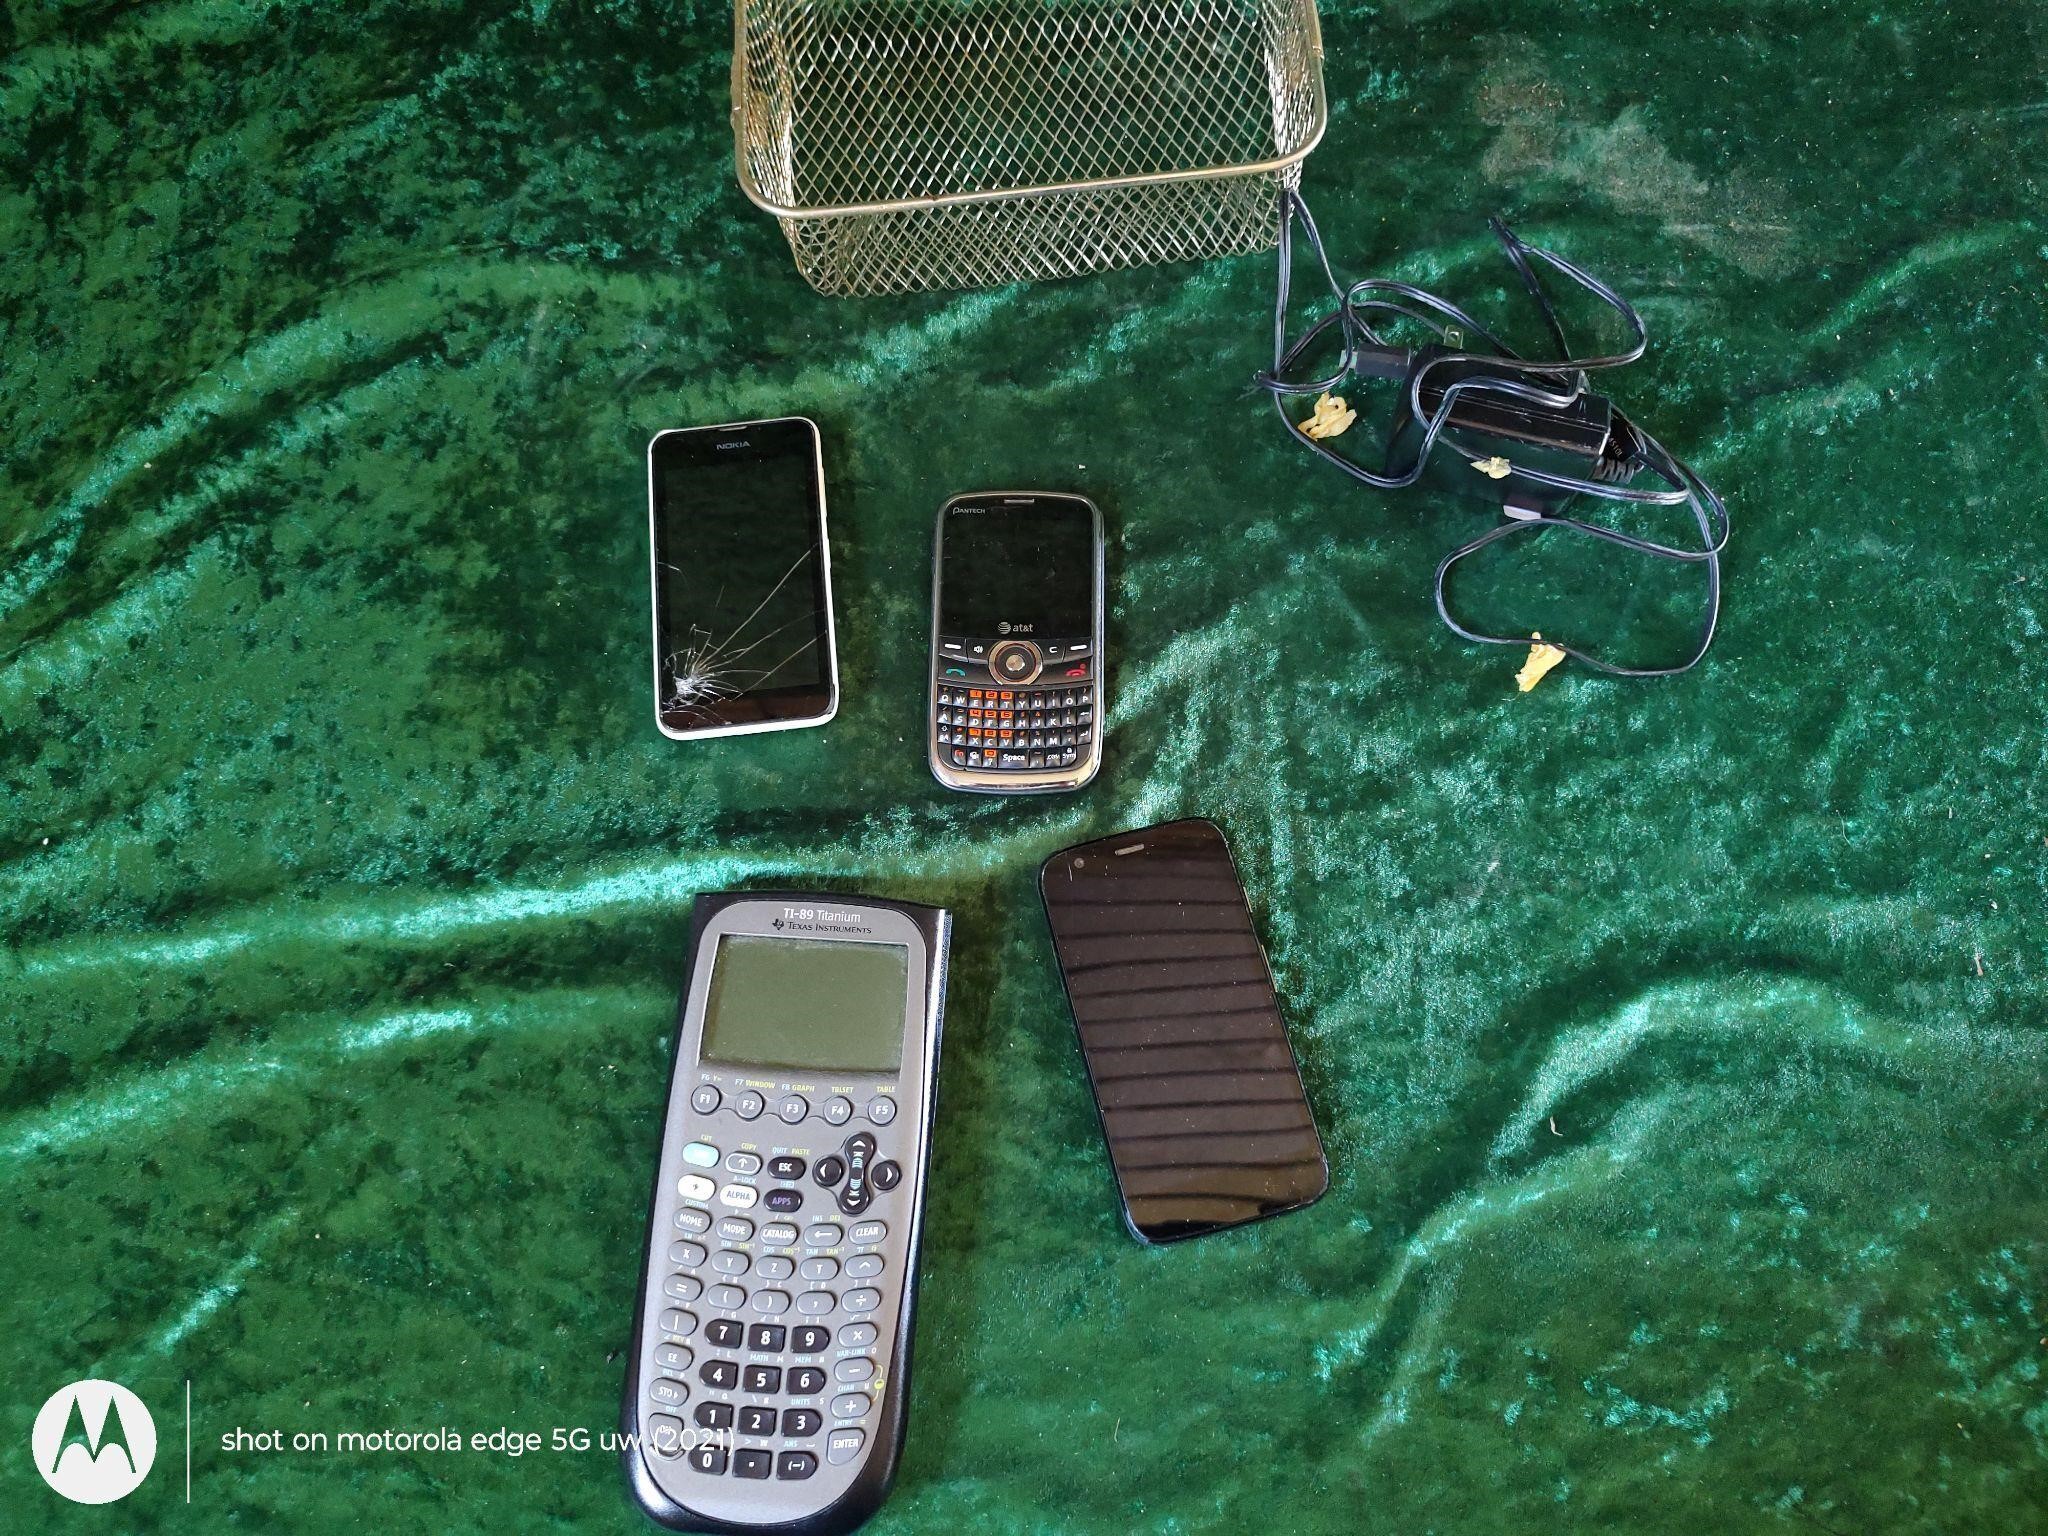 Motorola, Nokia, pantech Texas in. Cell phone cal.